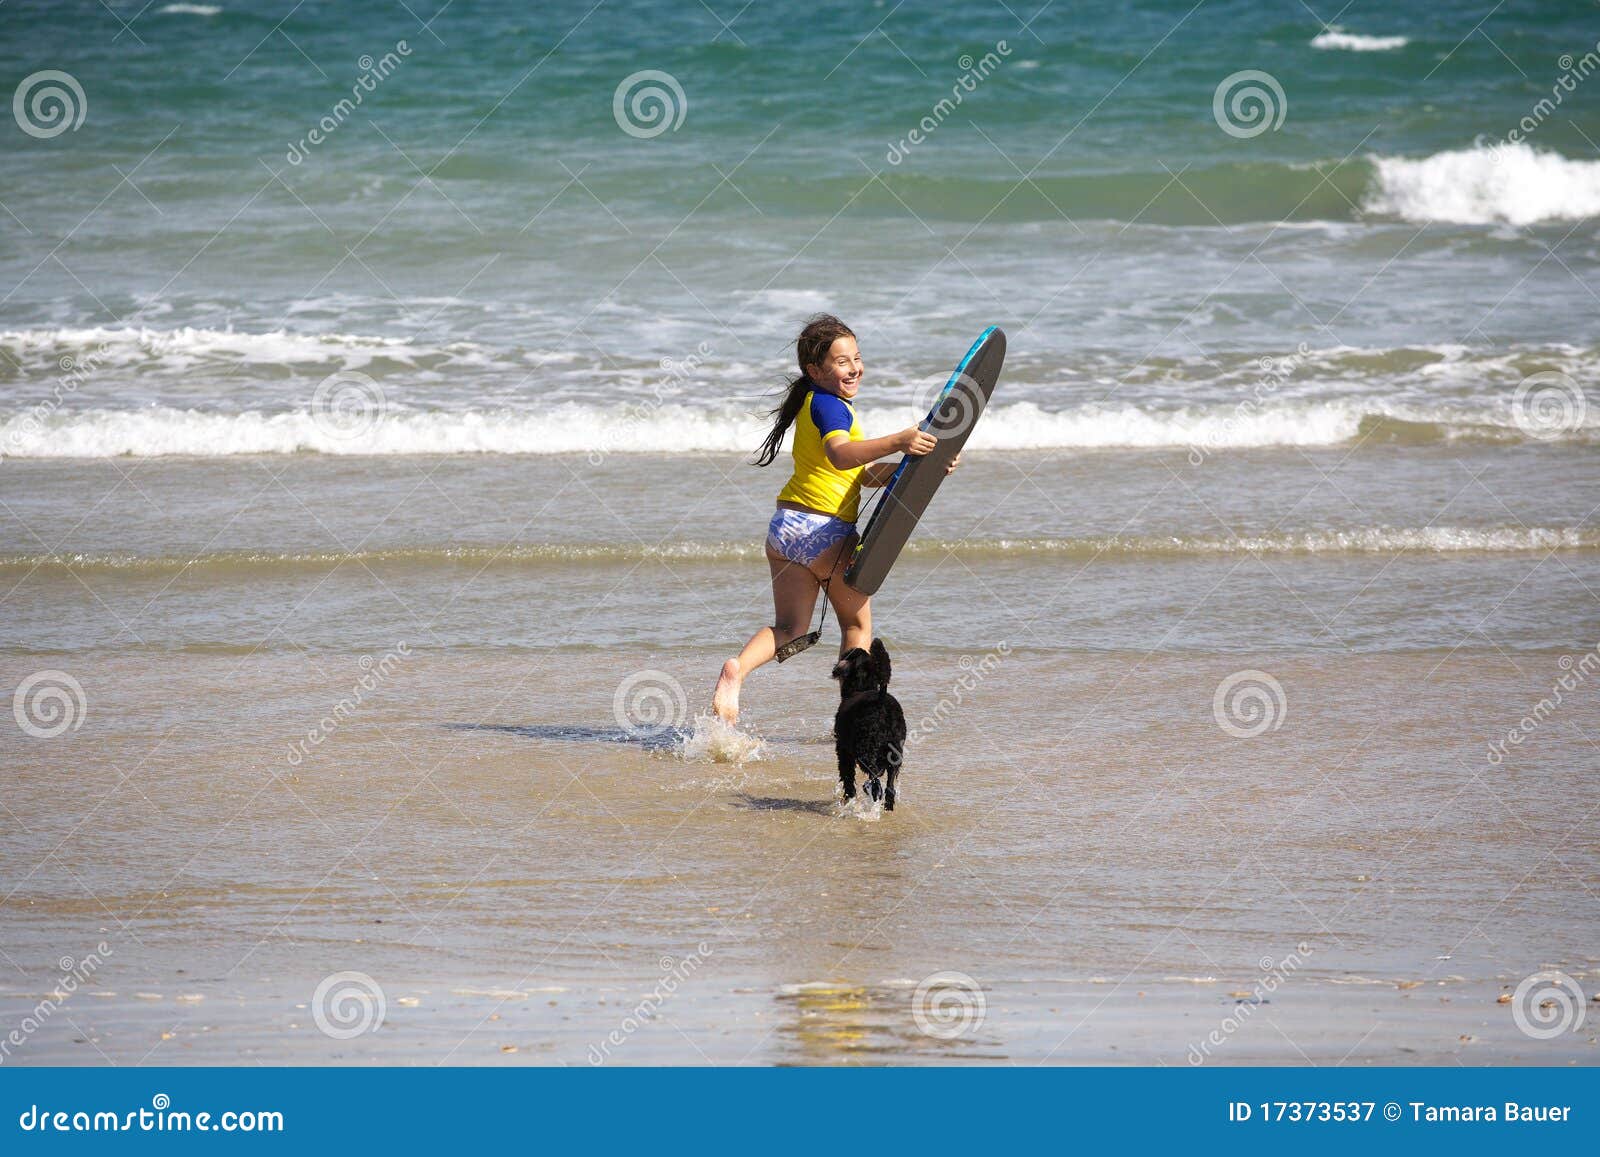 uitlijning Onderscheid Individualiteit Girl with Boogie Board at Beach Stock Image - Image of summer, recreation:  17373537